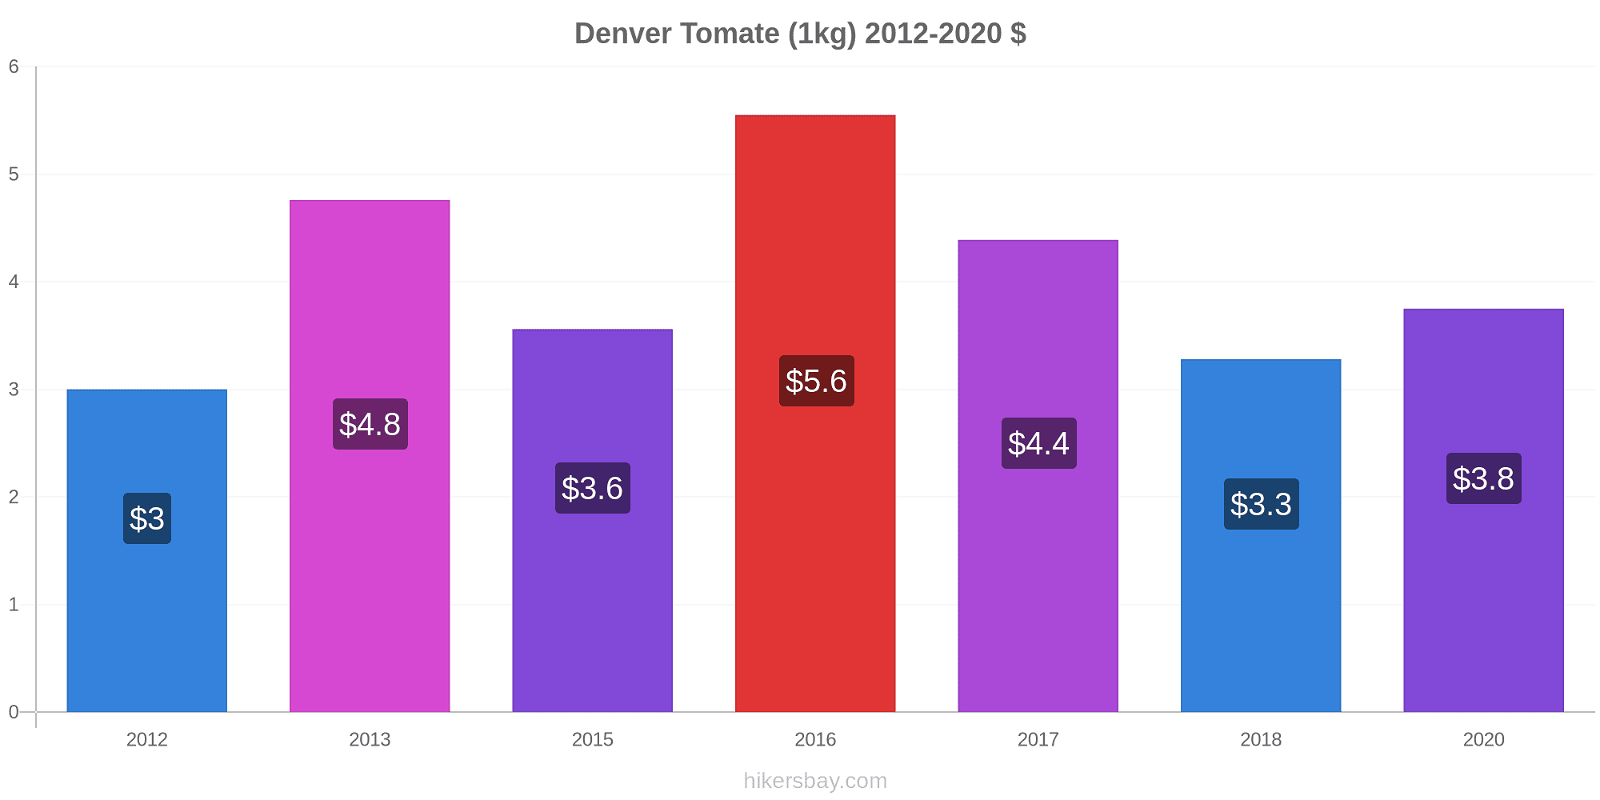 Denver variação de preço Tomate (1kg) hikersbay.com